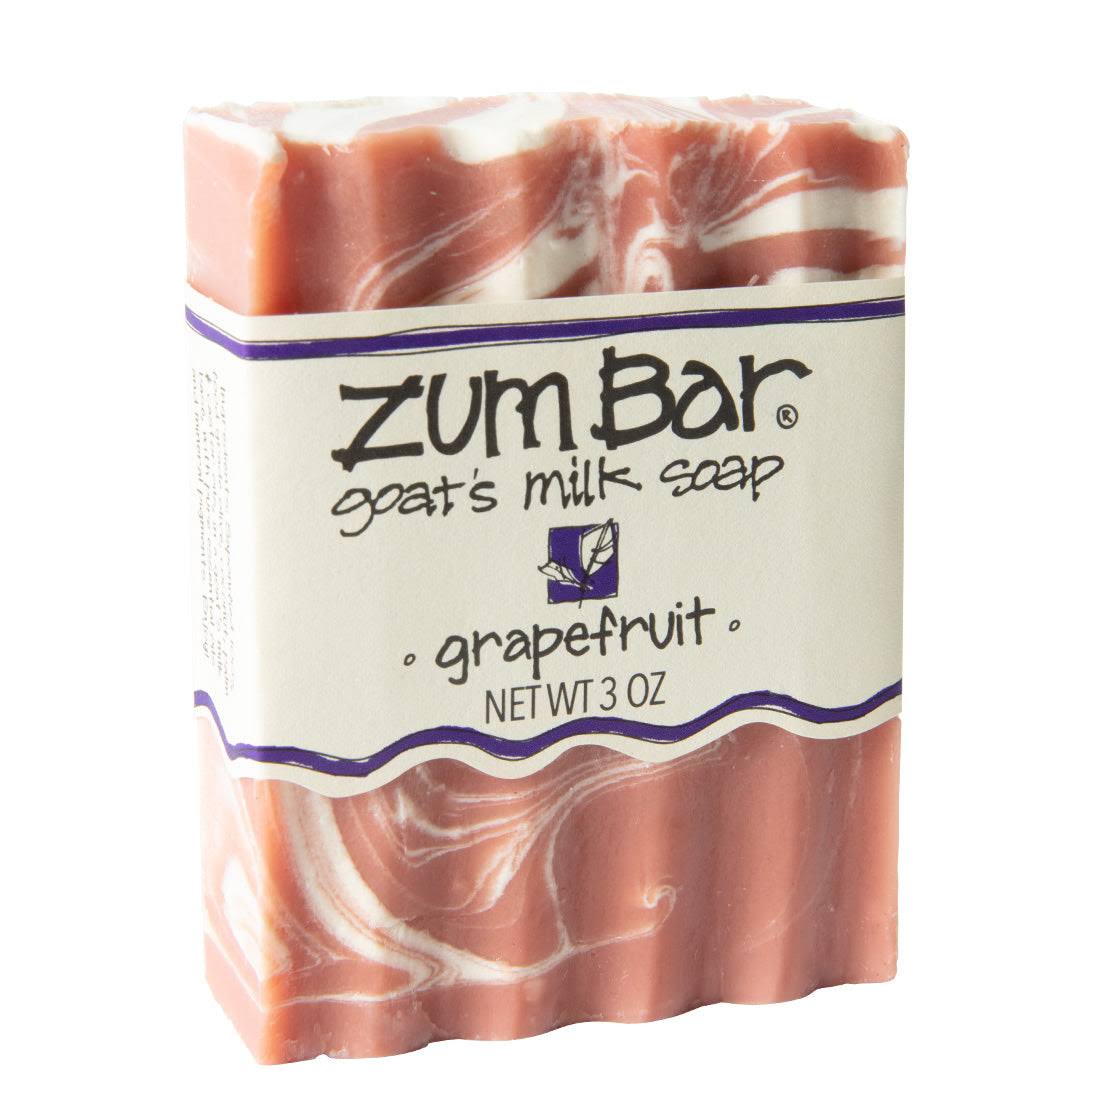 Zum Bar Goat's Milk Soap - Grapefruit, 3oz